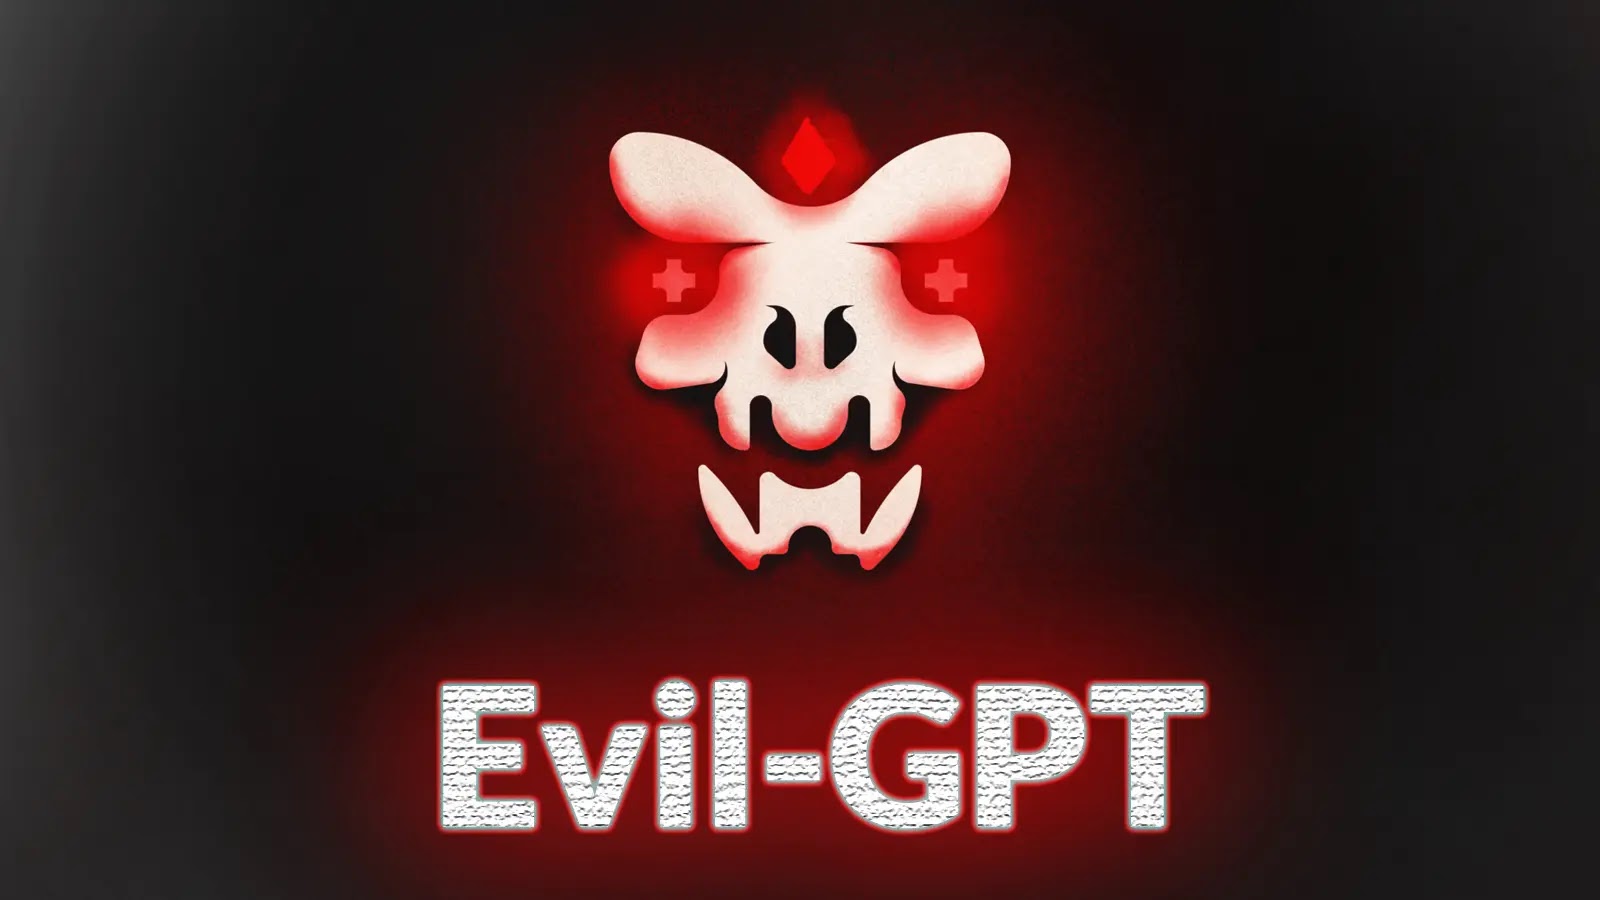 takian.ir hackers released evil gpt 1